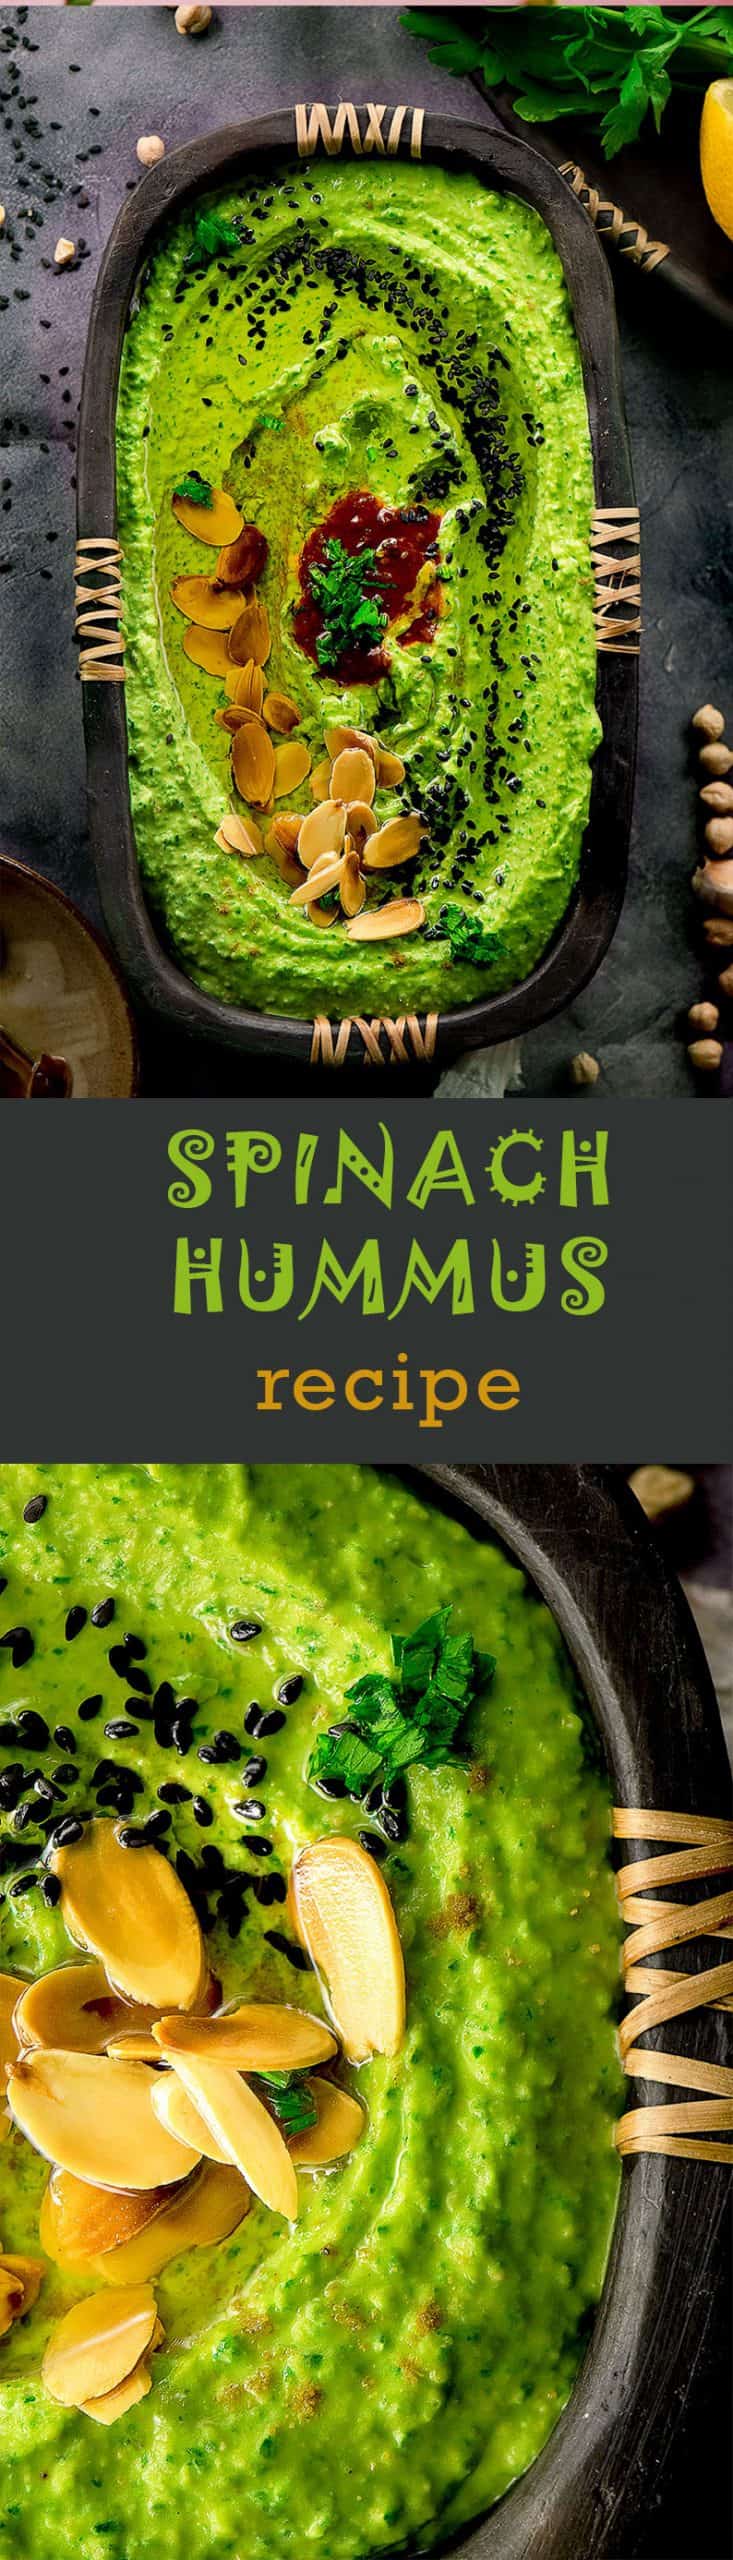 spinach-hummus